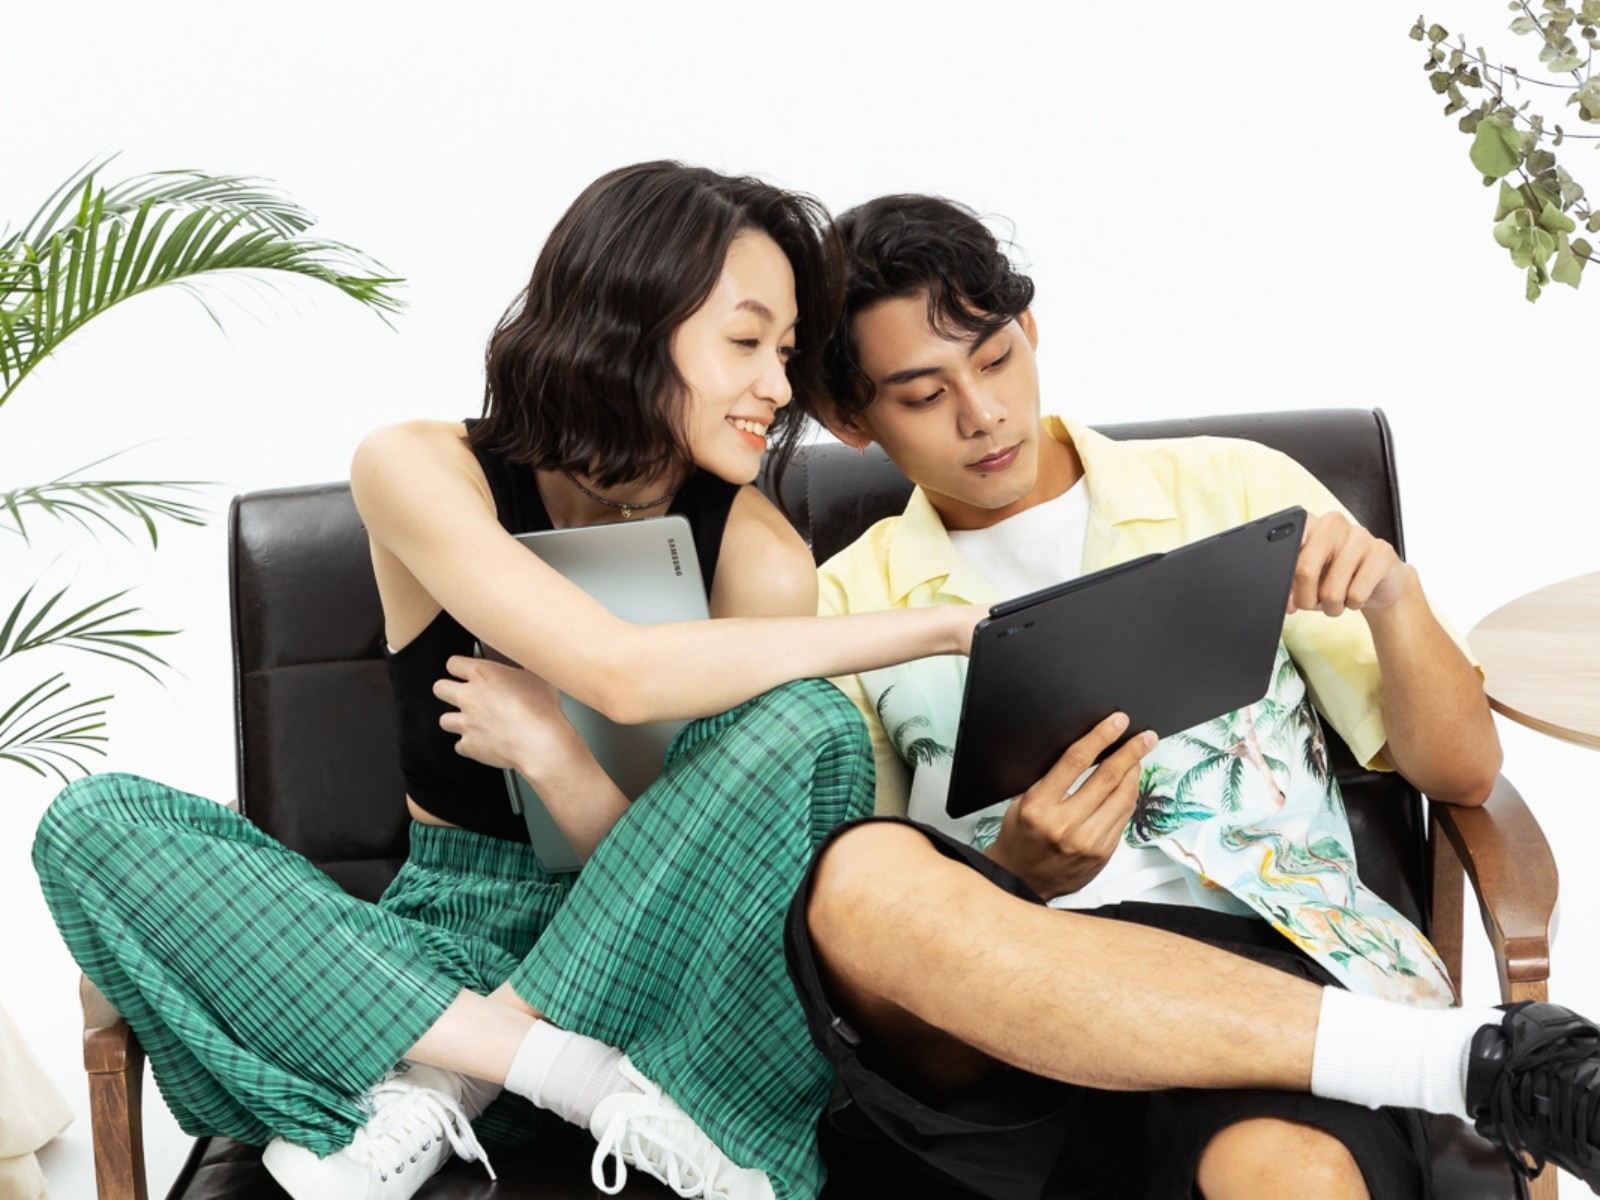 情侶不吵架的秘方是…「它」？！ 用 Galaxy Tab S7 FE 搞定生活各種小情趣！